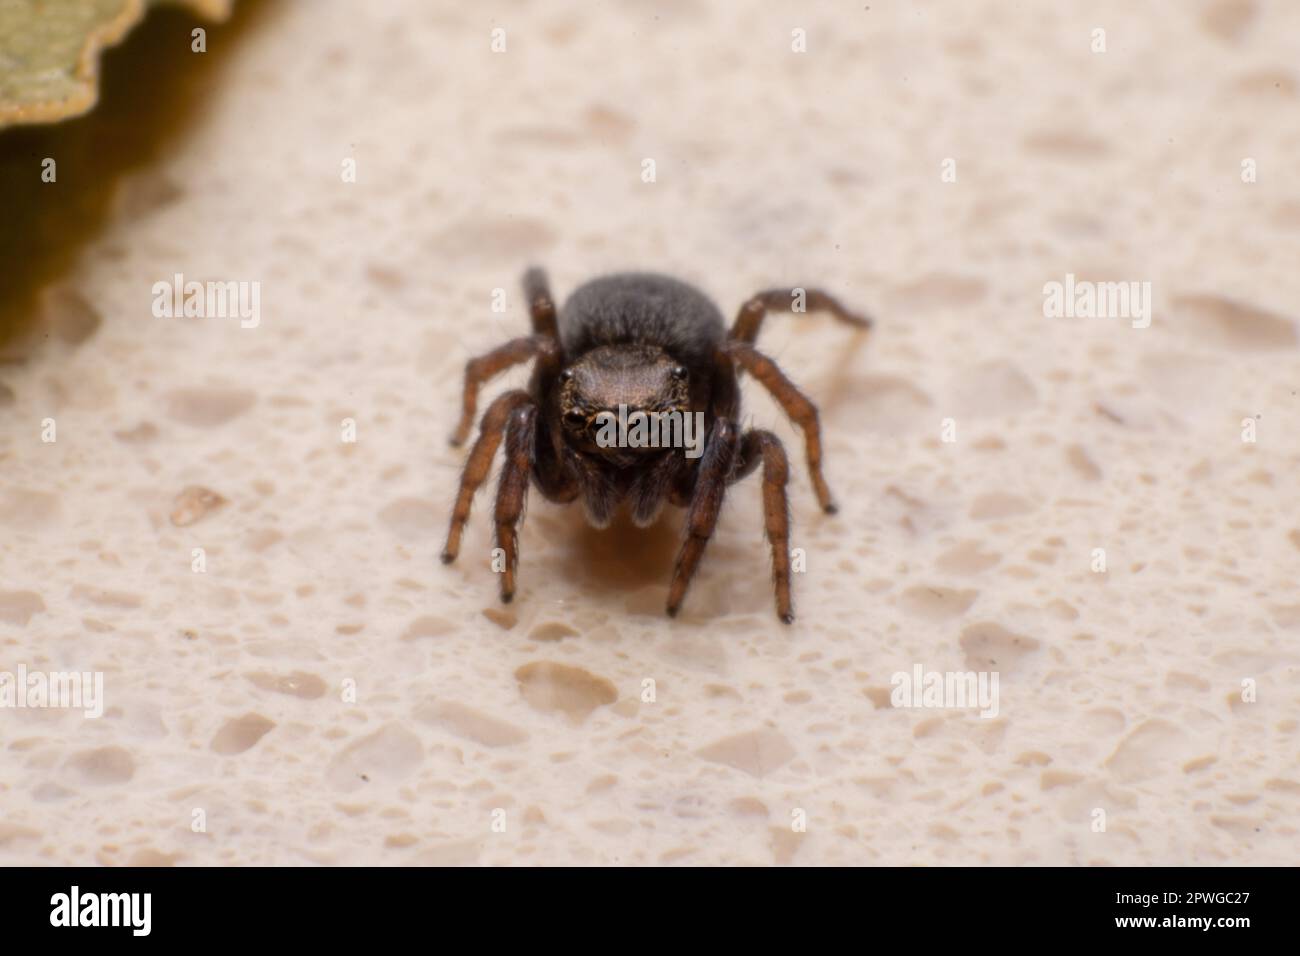 Brown Jumping spider Macro fotografía. Ojos de araña, arañas pequeñas. Insectos depredadores naturales. Foto de stock